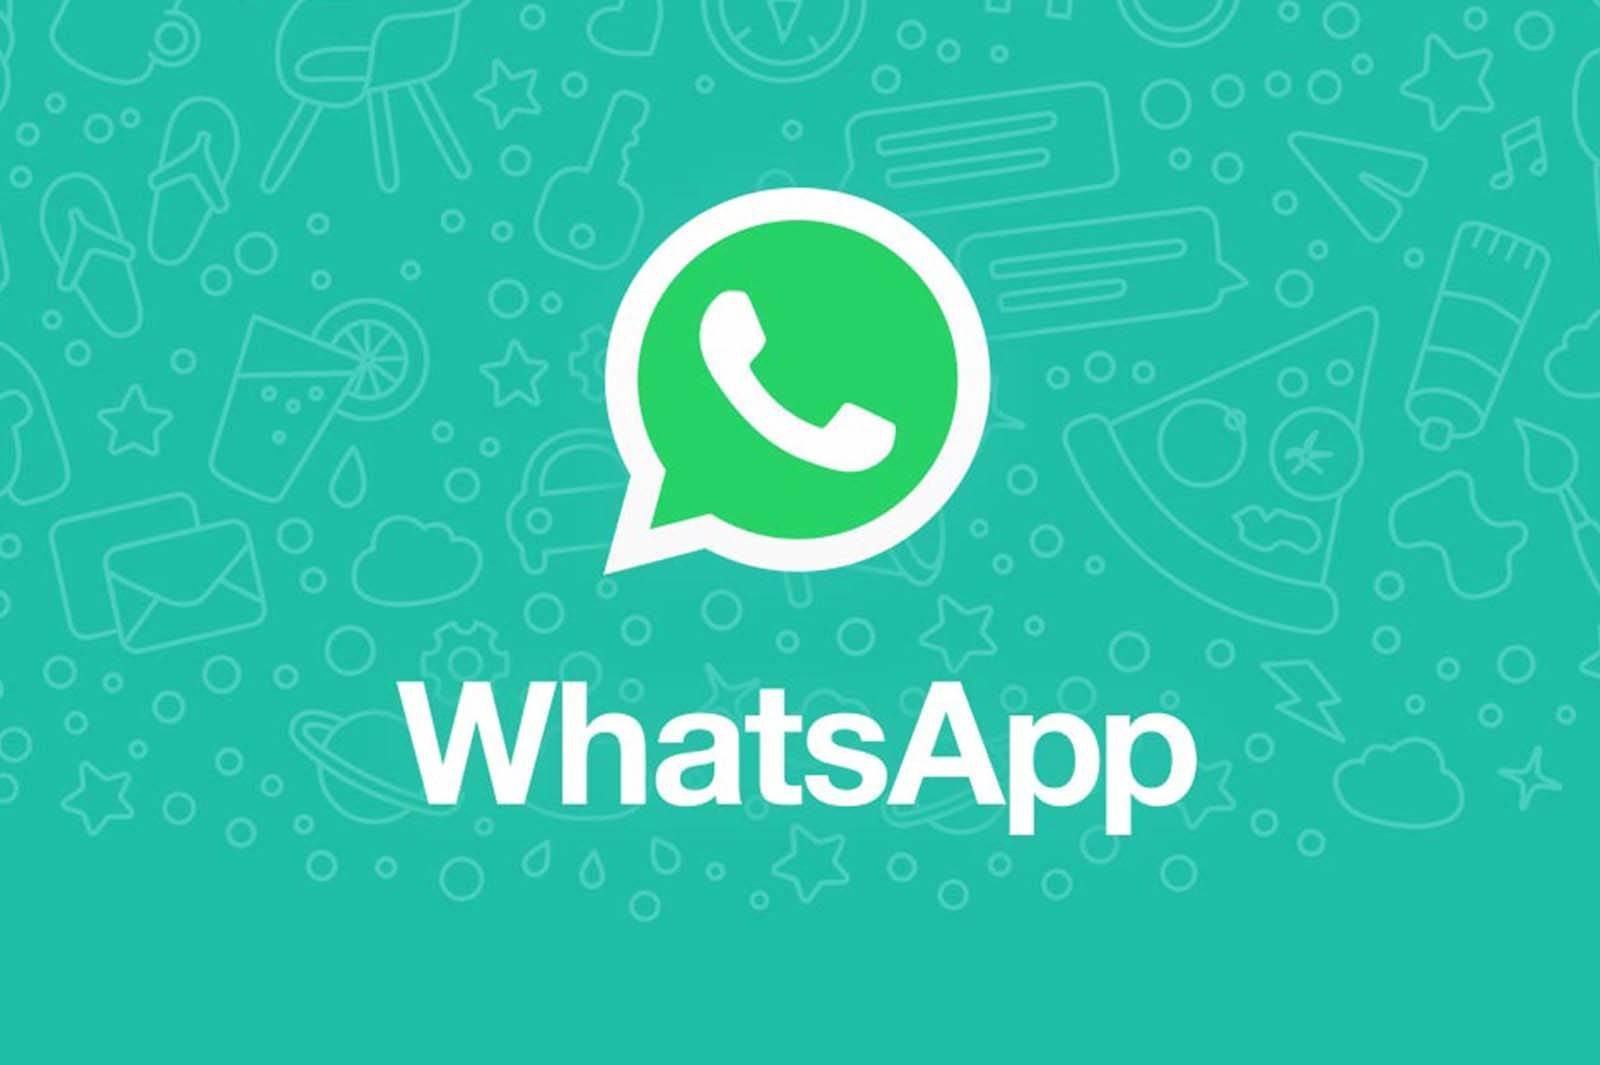 WhatsApp will get rid of the annoying minus